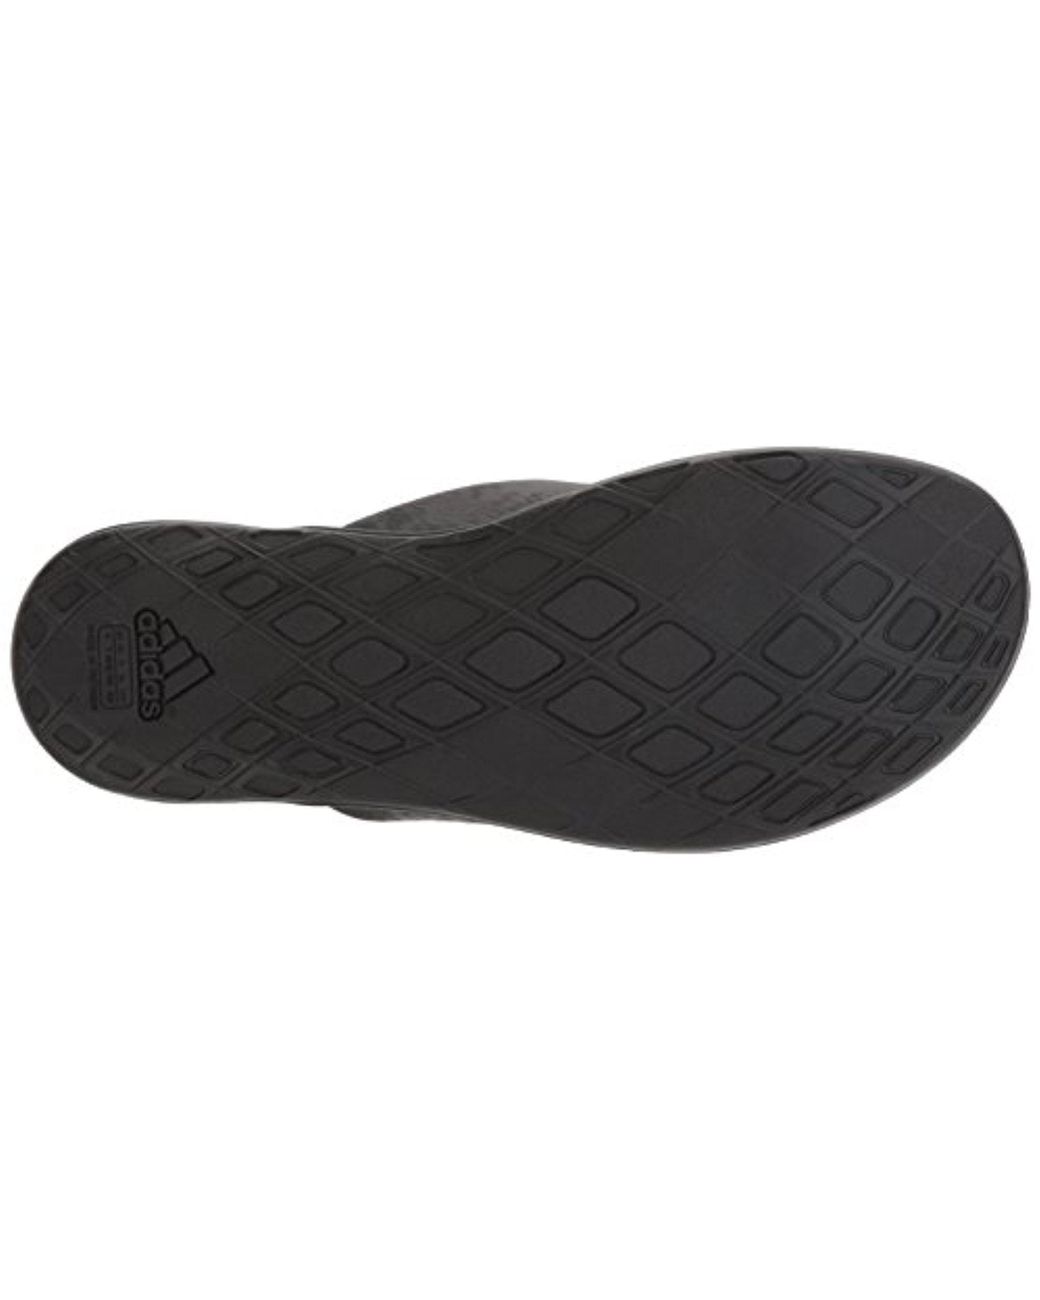 adidas Cloudfoam One Y W Flip-flop in Black | Lyst